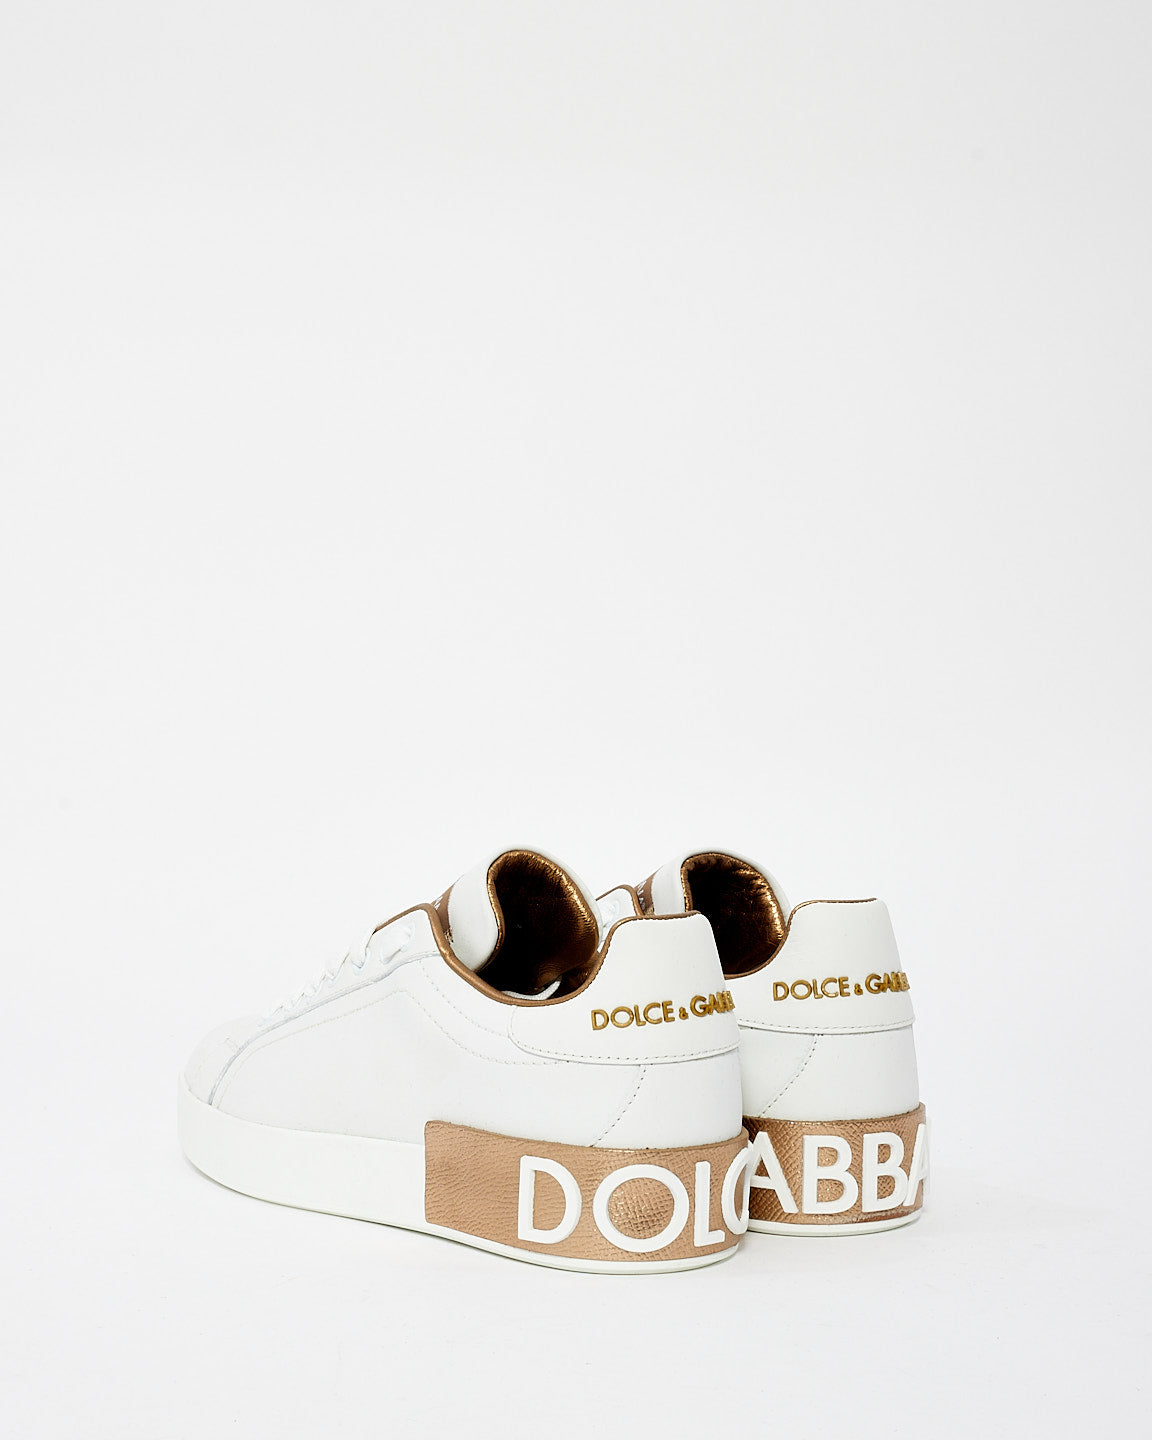 Dolce & Gabbana White & Gold Portofino Low Top Sneakers - 38.5